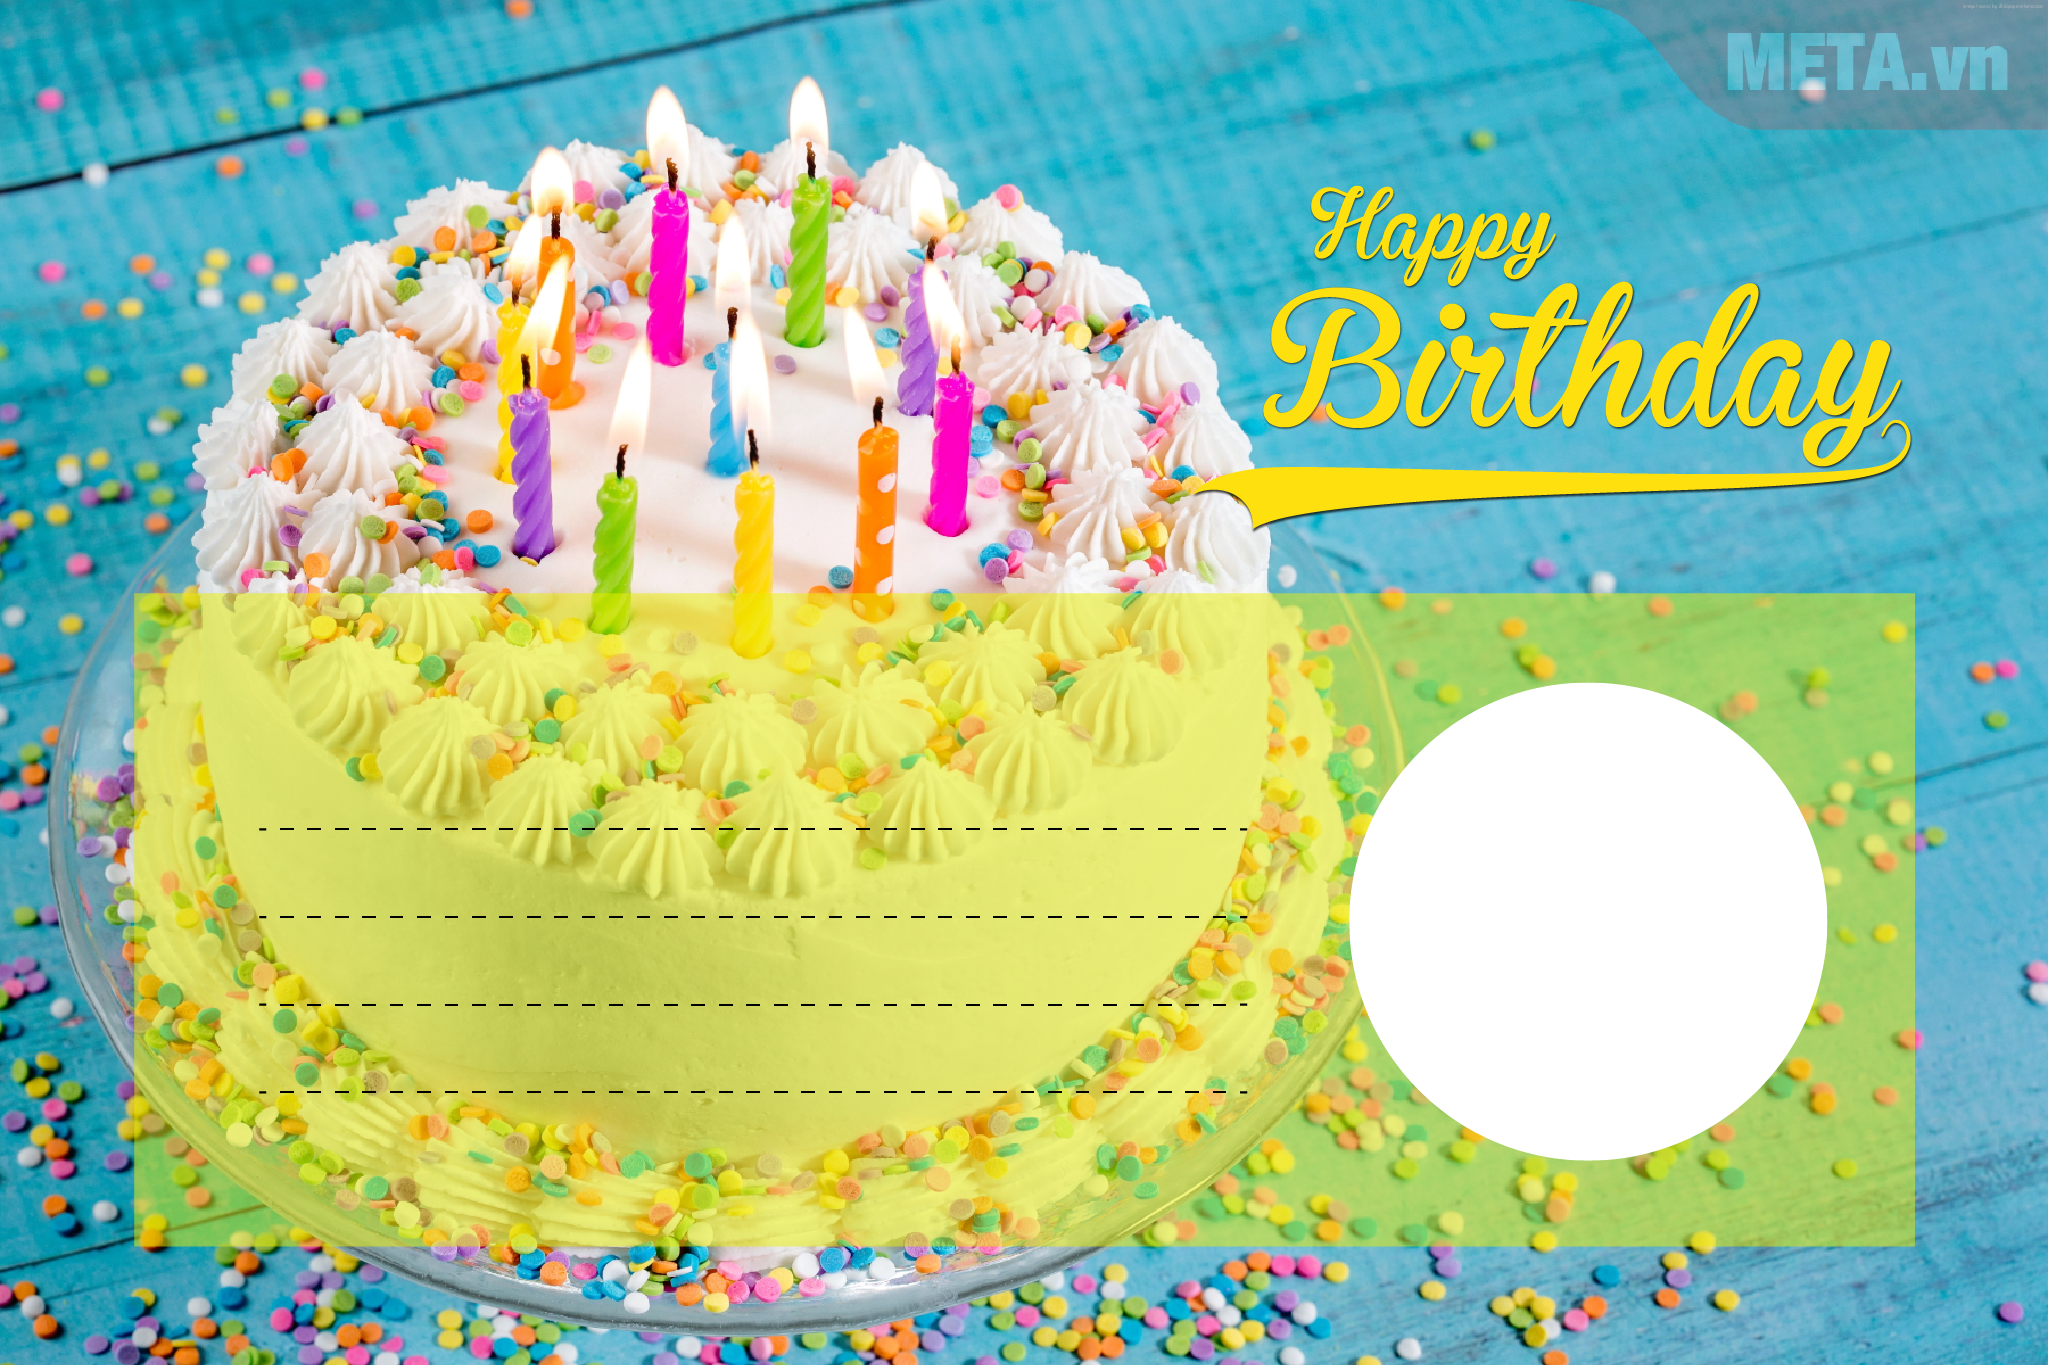 Để tăng thêm sự lãng mạn cho buổi tiệc sinh nhật, tại sao không thêm một chiếc bánh mừng sinh nhật vào tấm thiệp của bạn? Với thiệp sinh nhật kèm bánh, bạn sẽ có thể tặng một món quà đầy ý nghĩa và ngọt ngào cho người được tặng.